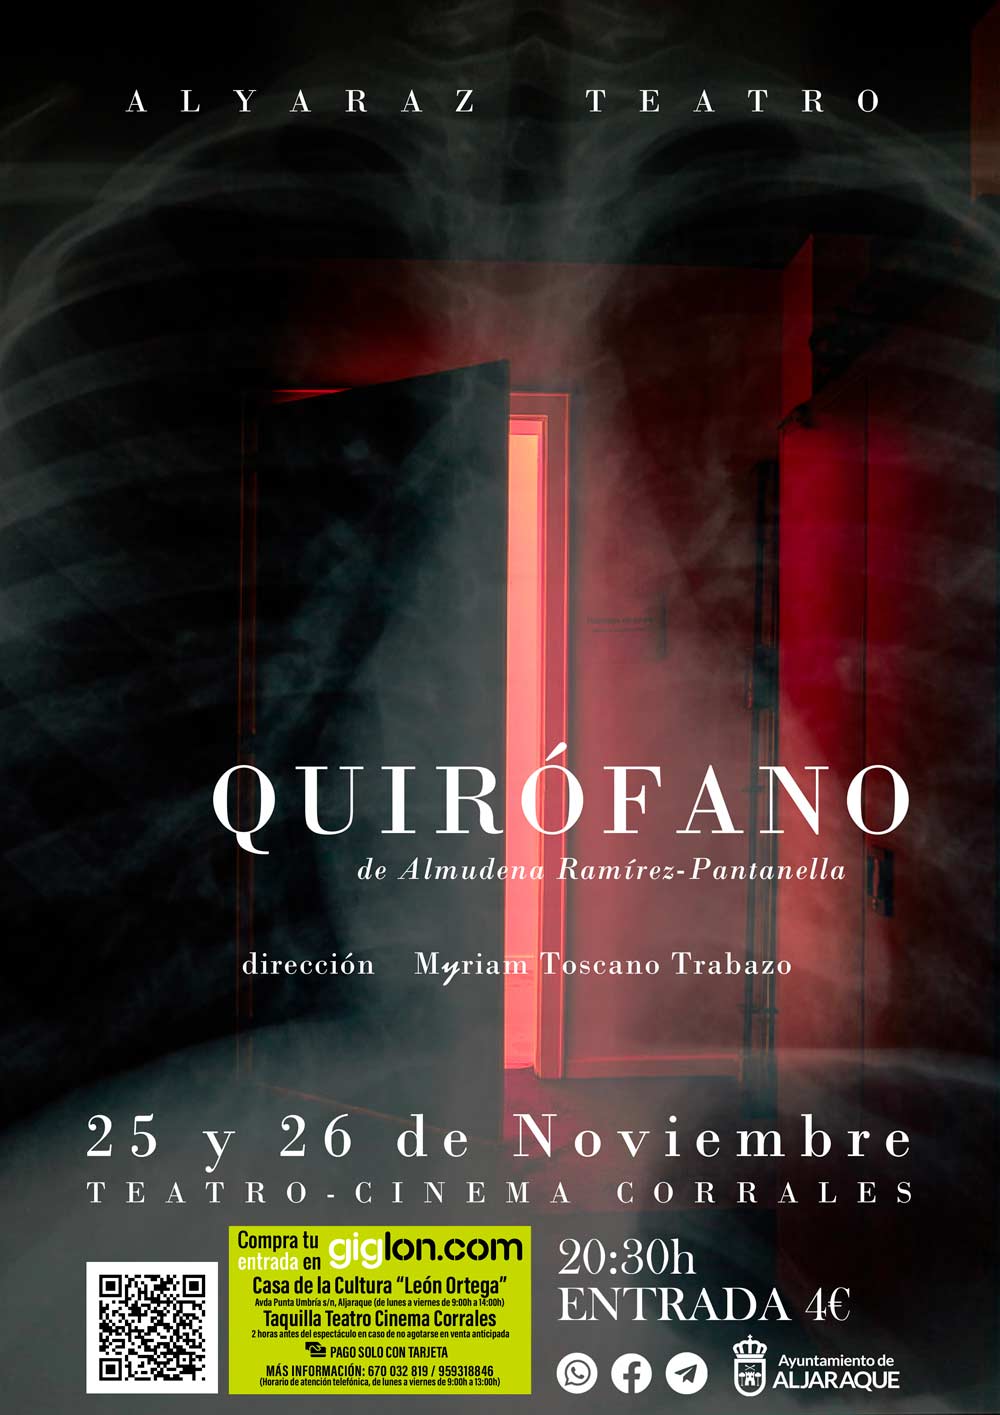 Quirofano teatro Corrales 25 y 26 de noviembre 1